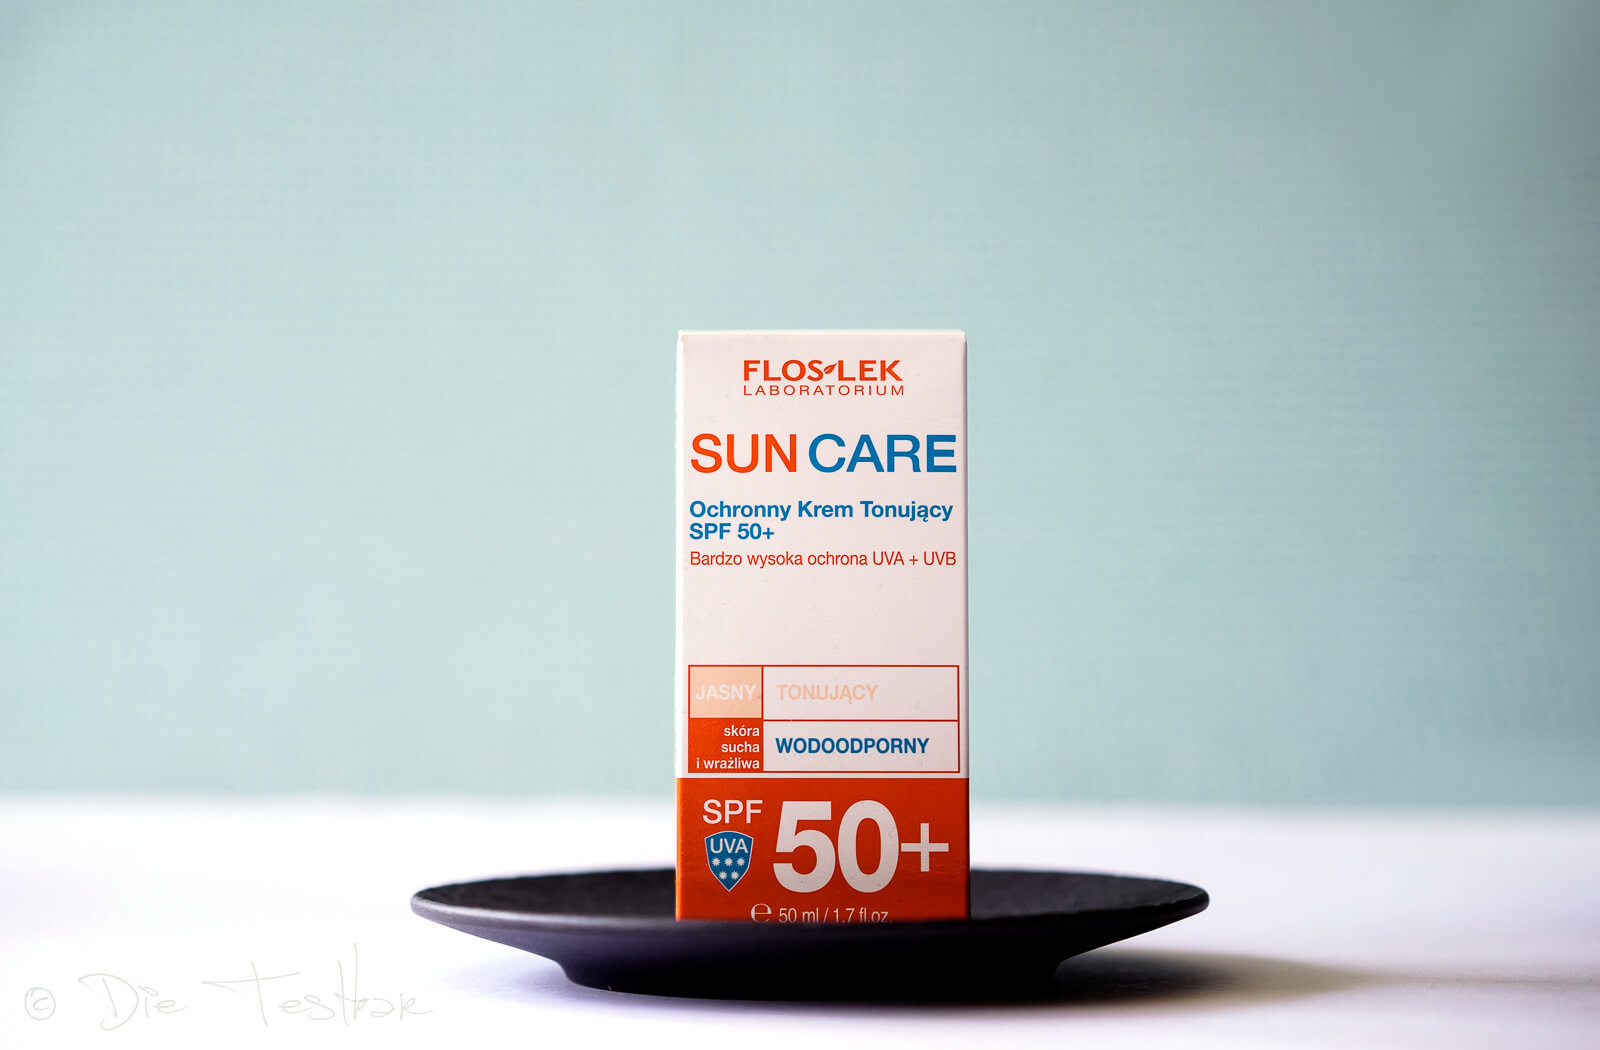  Floslek DERMO EXPERT™ - SUN CARE Getönte UV-Schutzcreme LSF 50+ und getönte, ölfreie UV-Schutzcreme LSF 50+